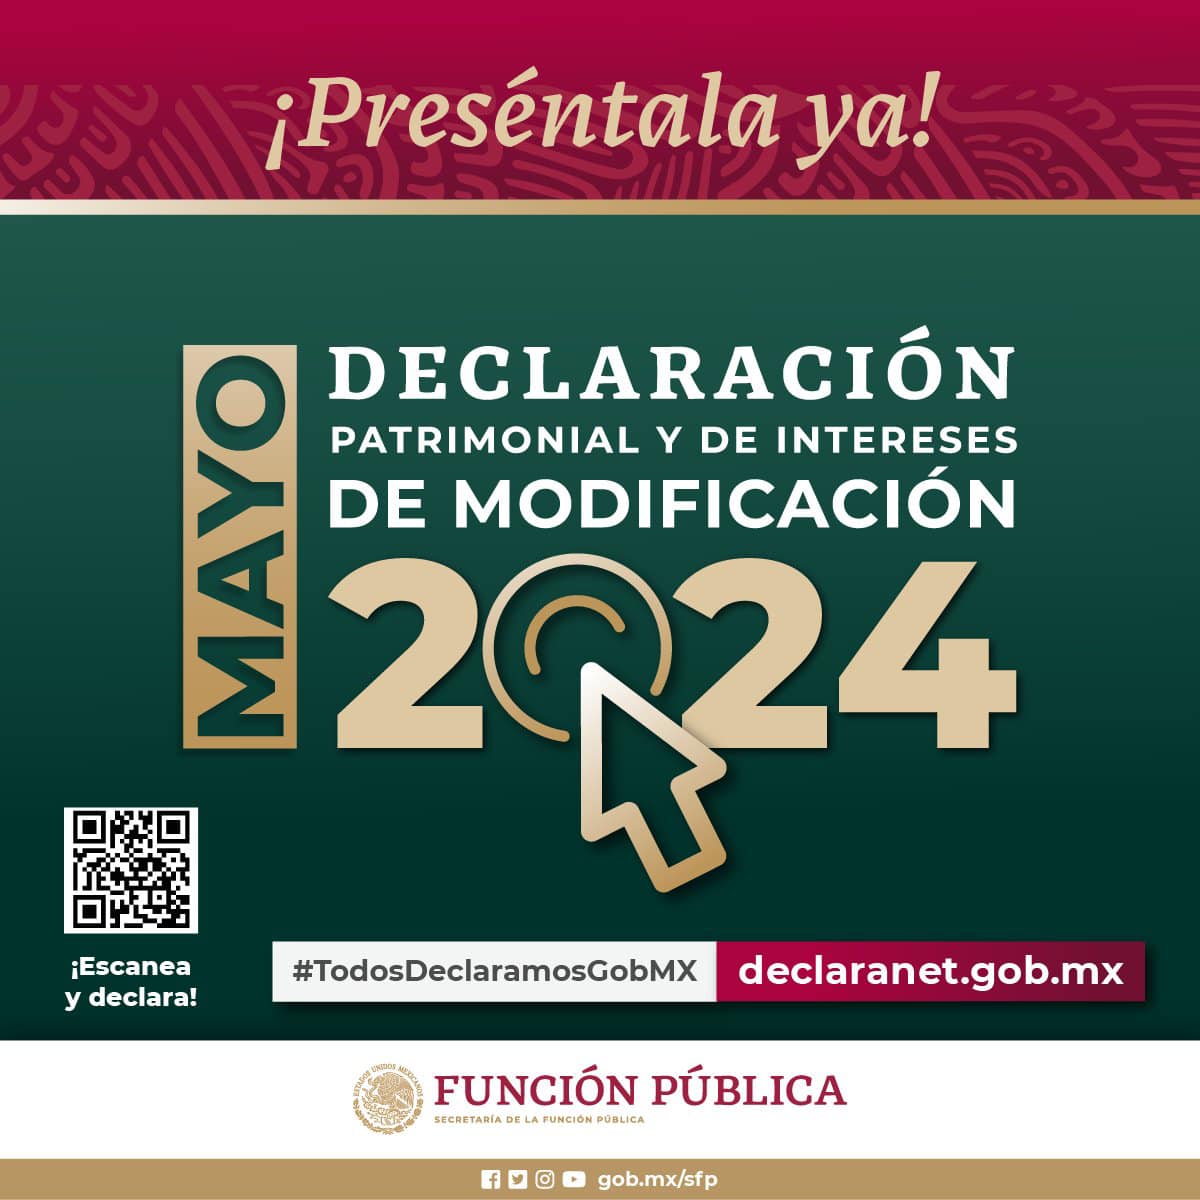 Persona servidora pública federal: Recuerda que #Mayo es el mes para presentar la #DeclaraciónPatrimonial y de intereses, en la modalidad de modificación 2024. Preséntala ya, ingresando a #DeclaraNet 📷 declaranet.gob.mx #DeclaraNet2024 #TodosDeclaramosGobMx